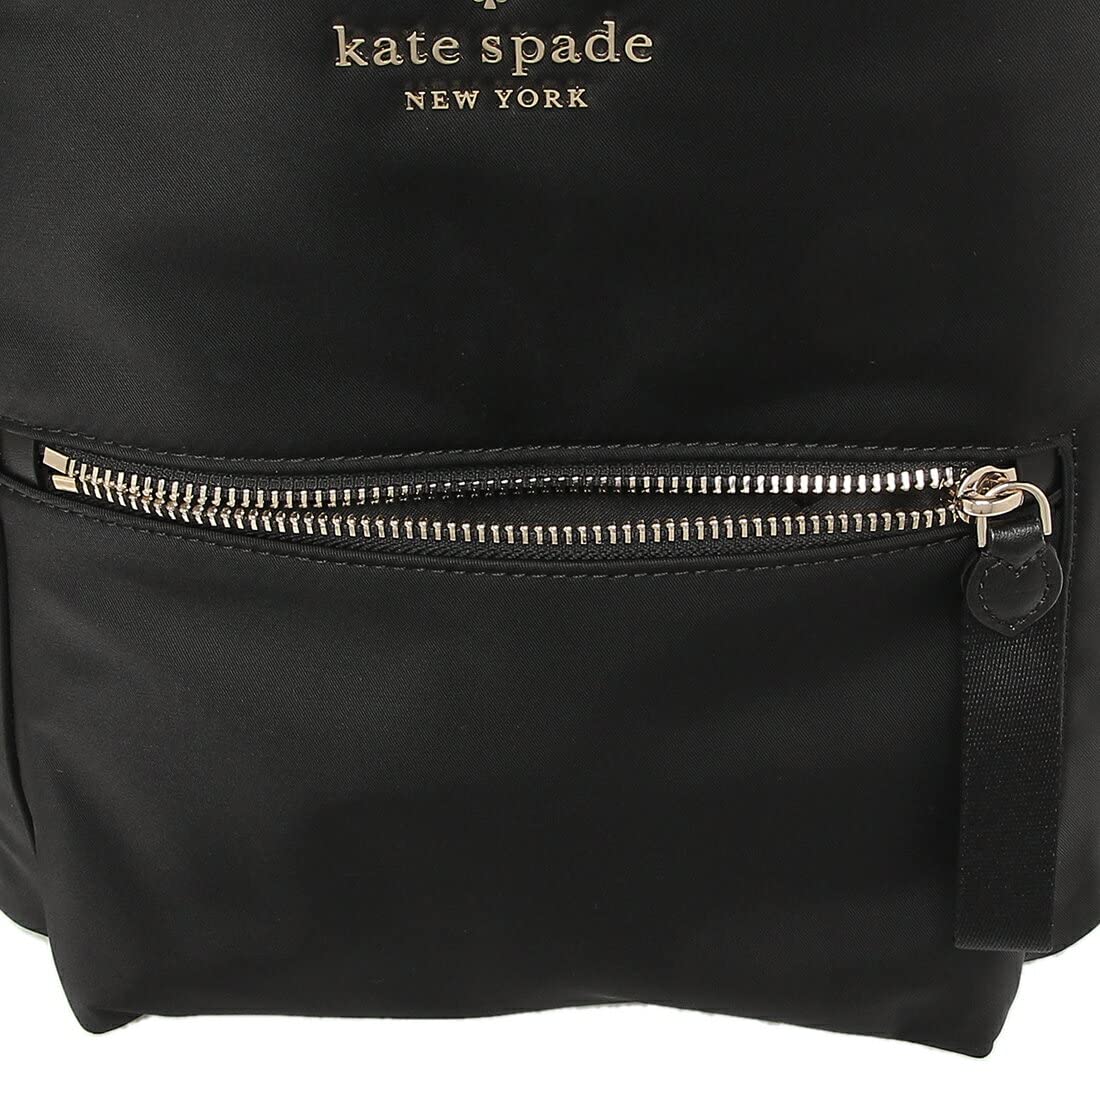 Kate Spade New York Chelsea Medium Nylon Backpack